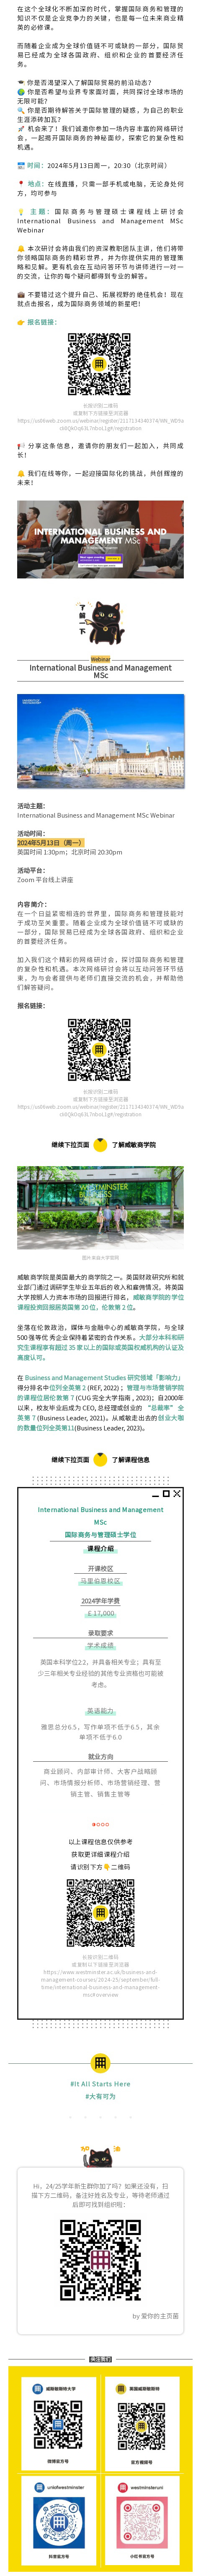 news-International-Business-Management-MSc-Webinar.jpg